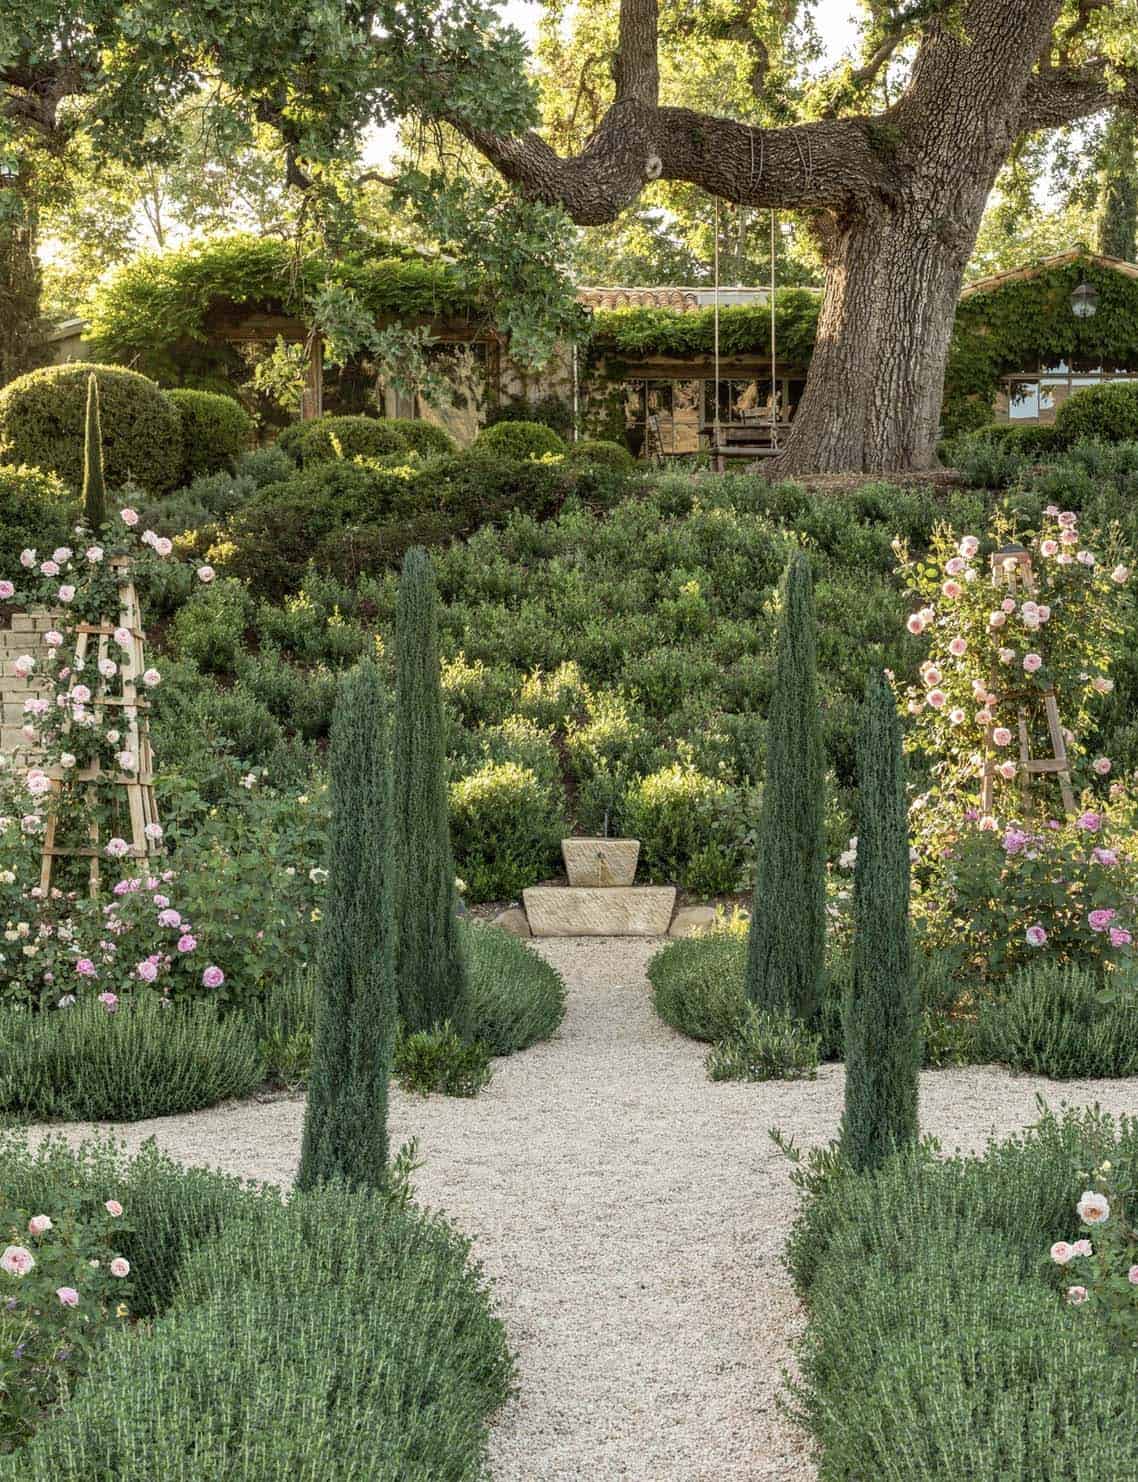 European-inspired country home garden